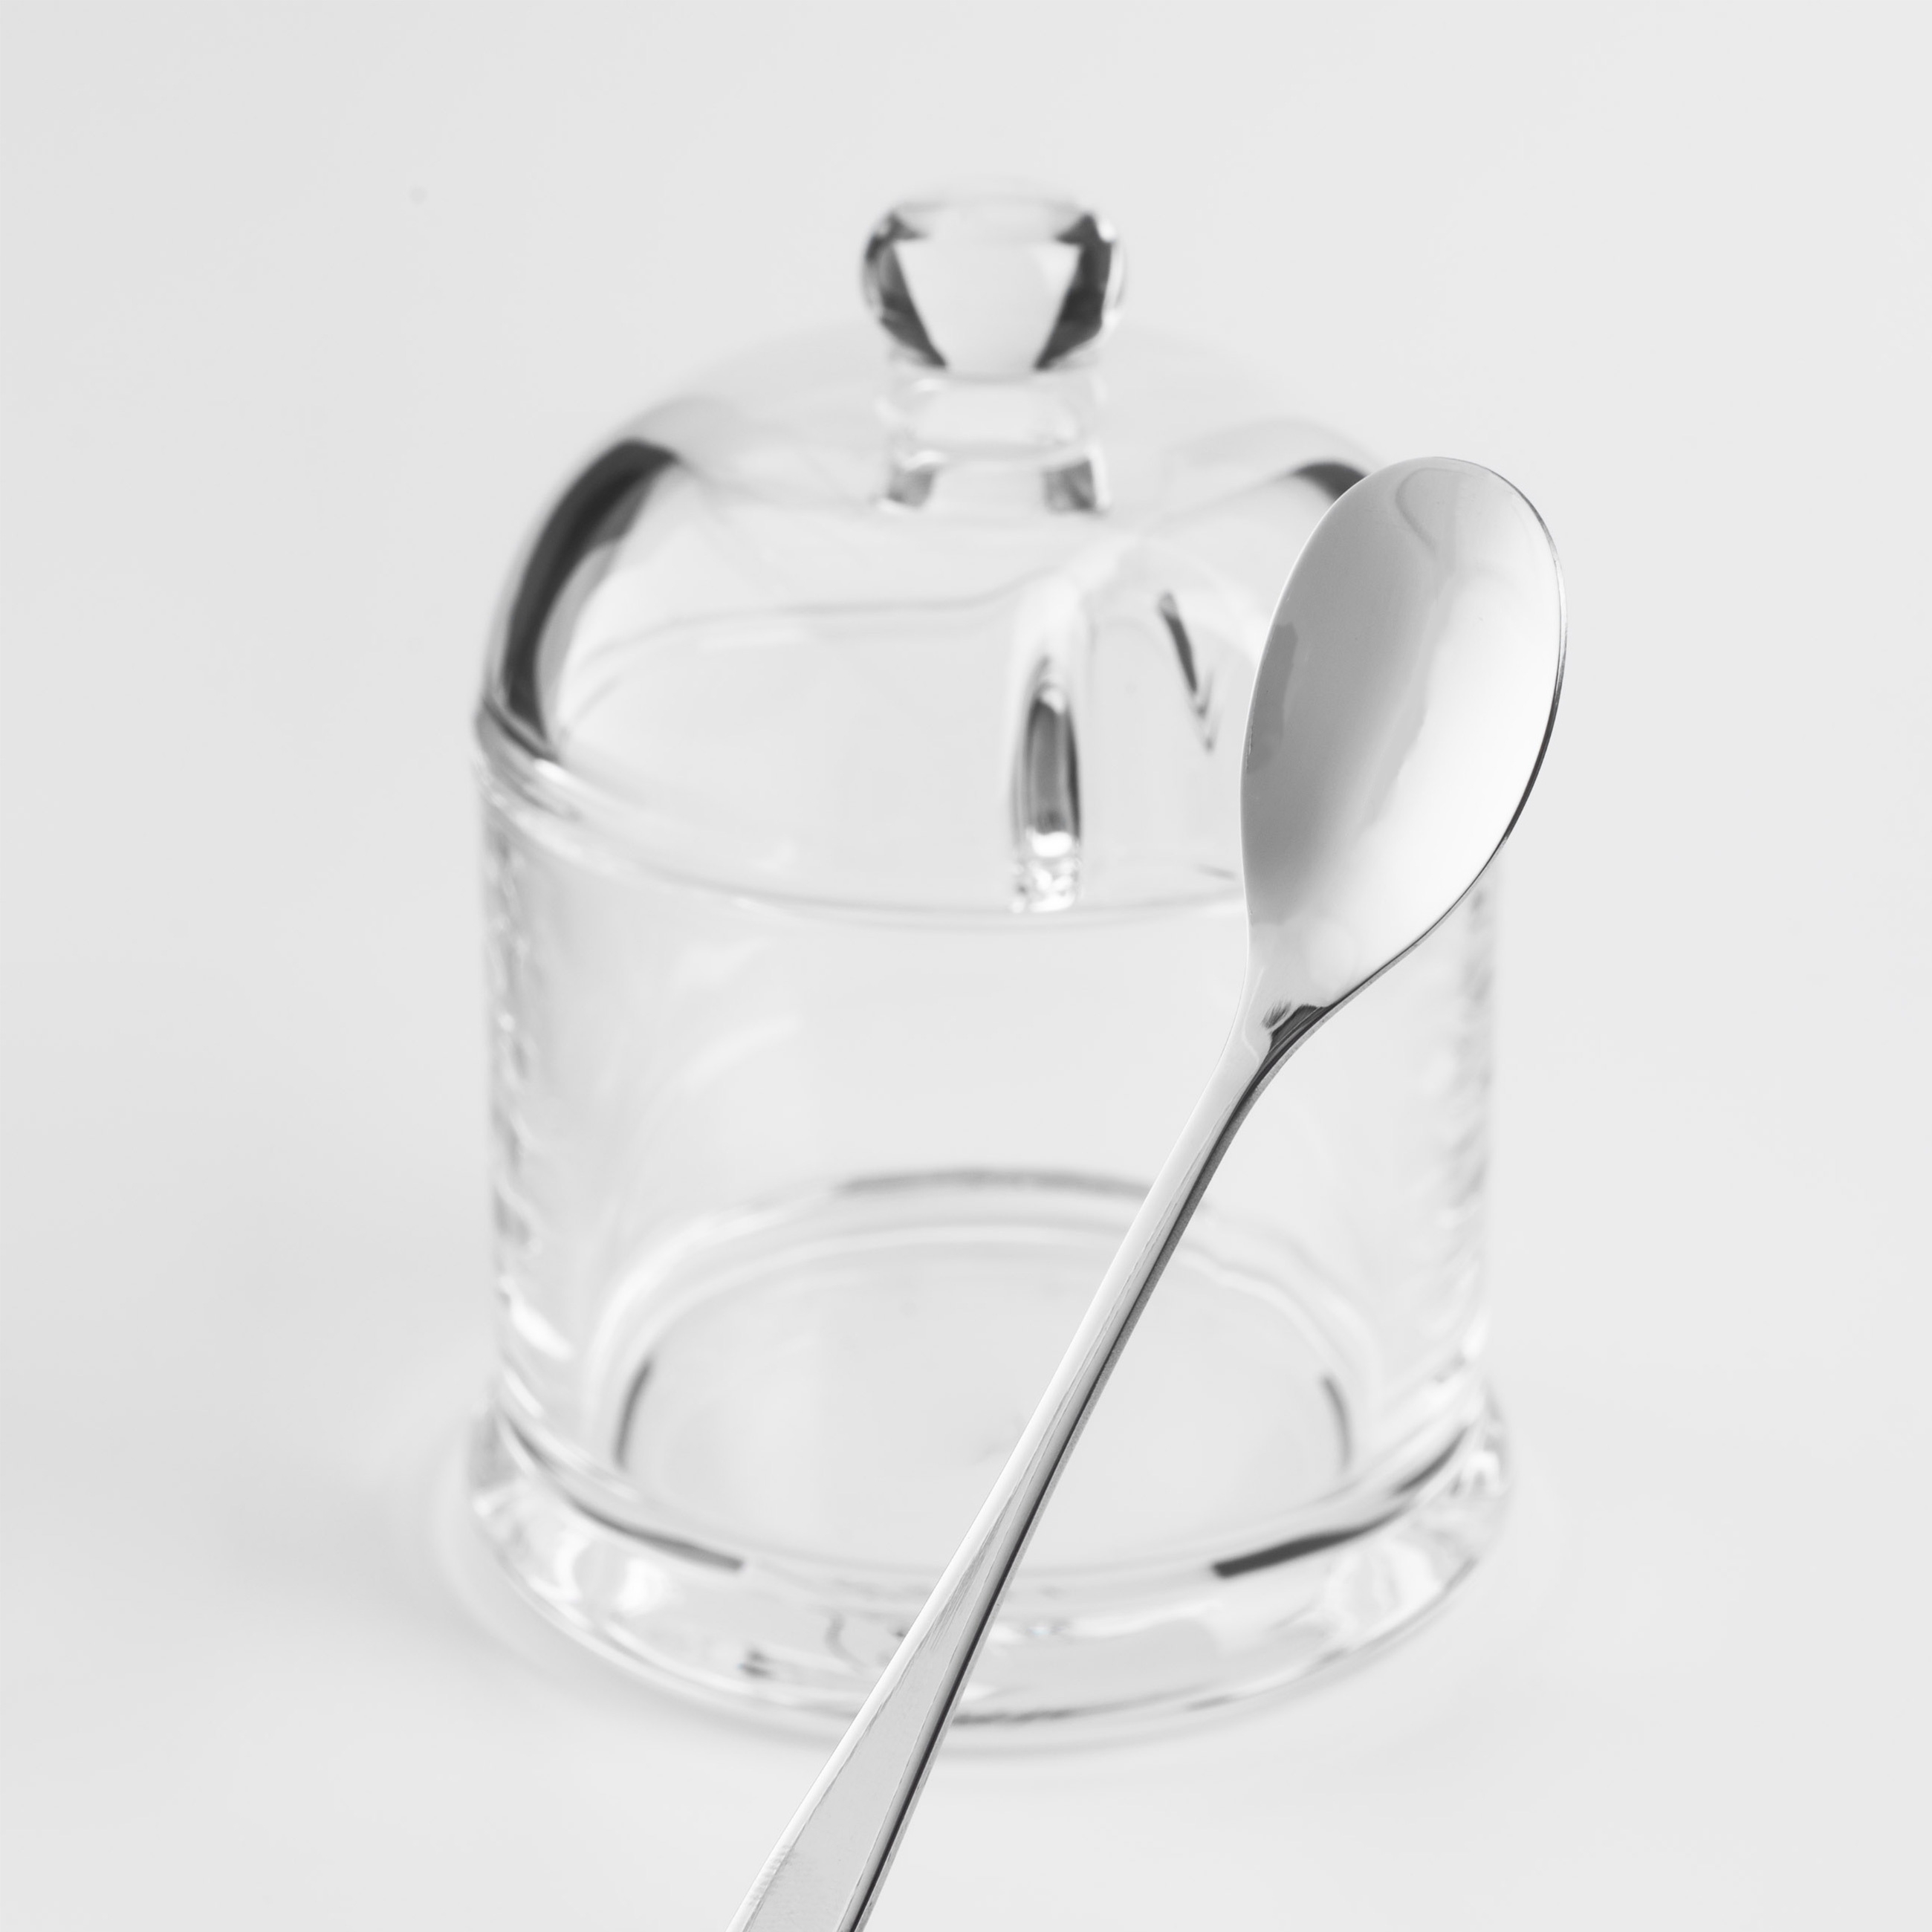 Сахарница, 14 см, 250 мл, с ложкой, стекло/сталь, Volo  изображение № 4